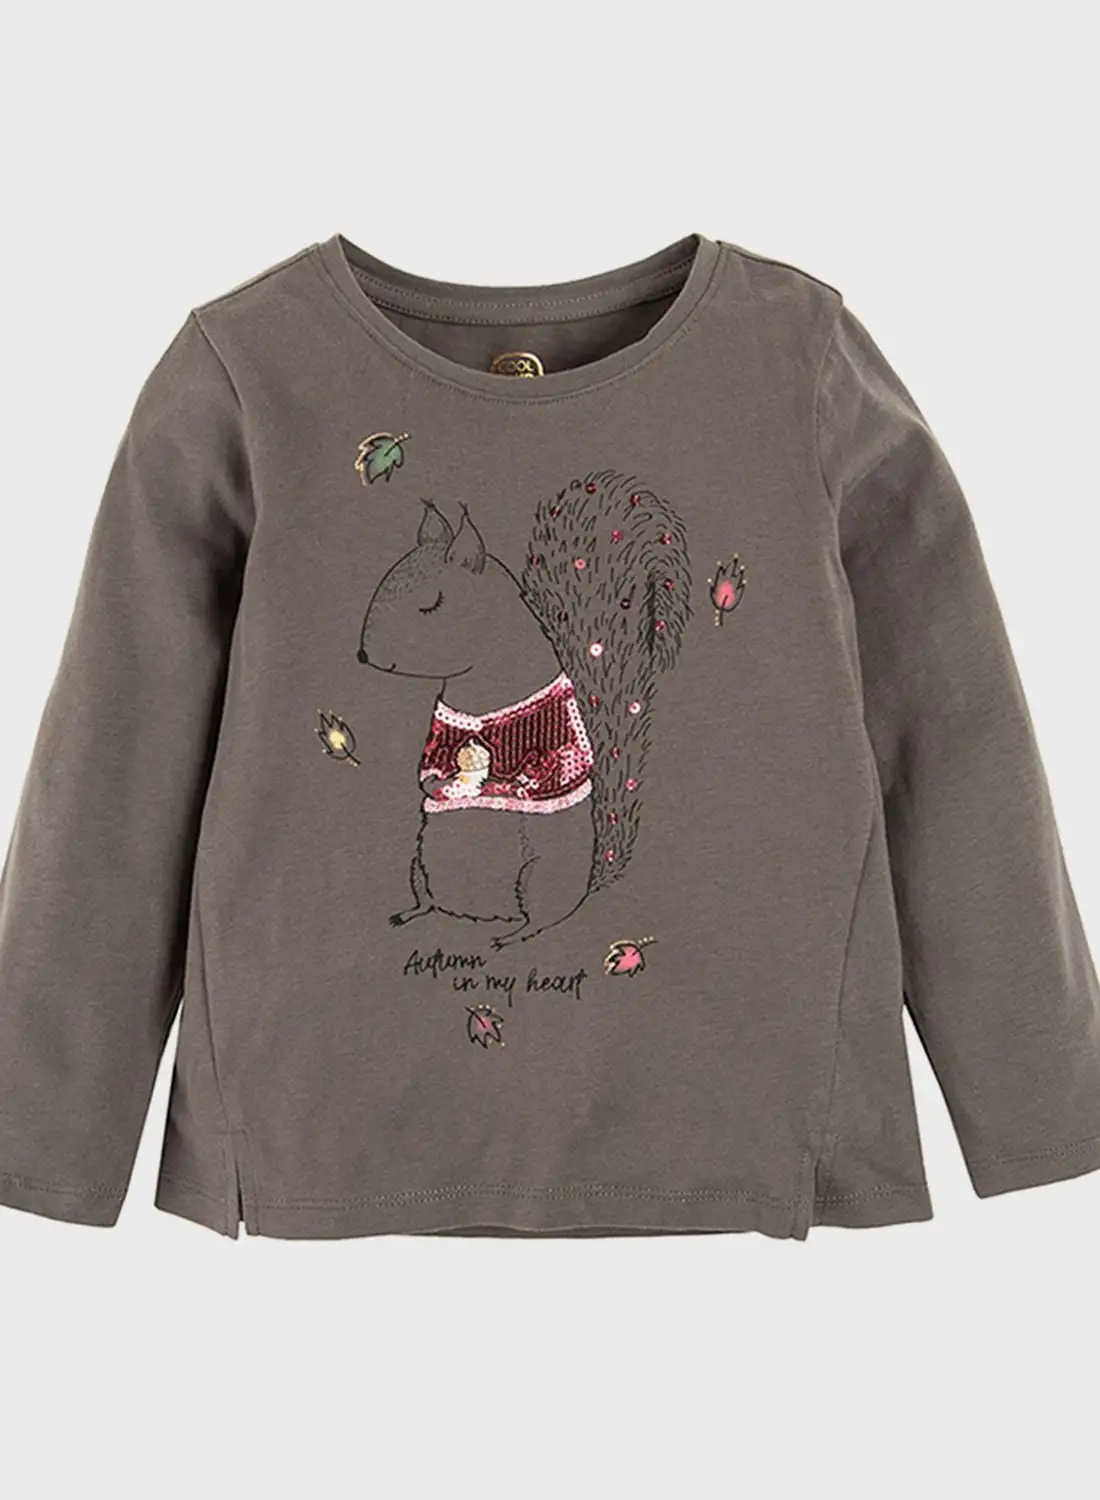 SMYK Kids Squirrel Printed Round Neck T-Shirt